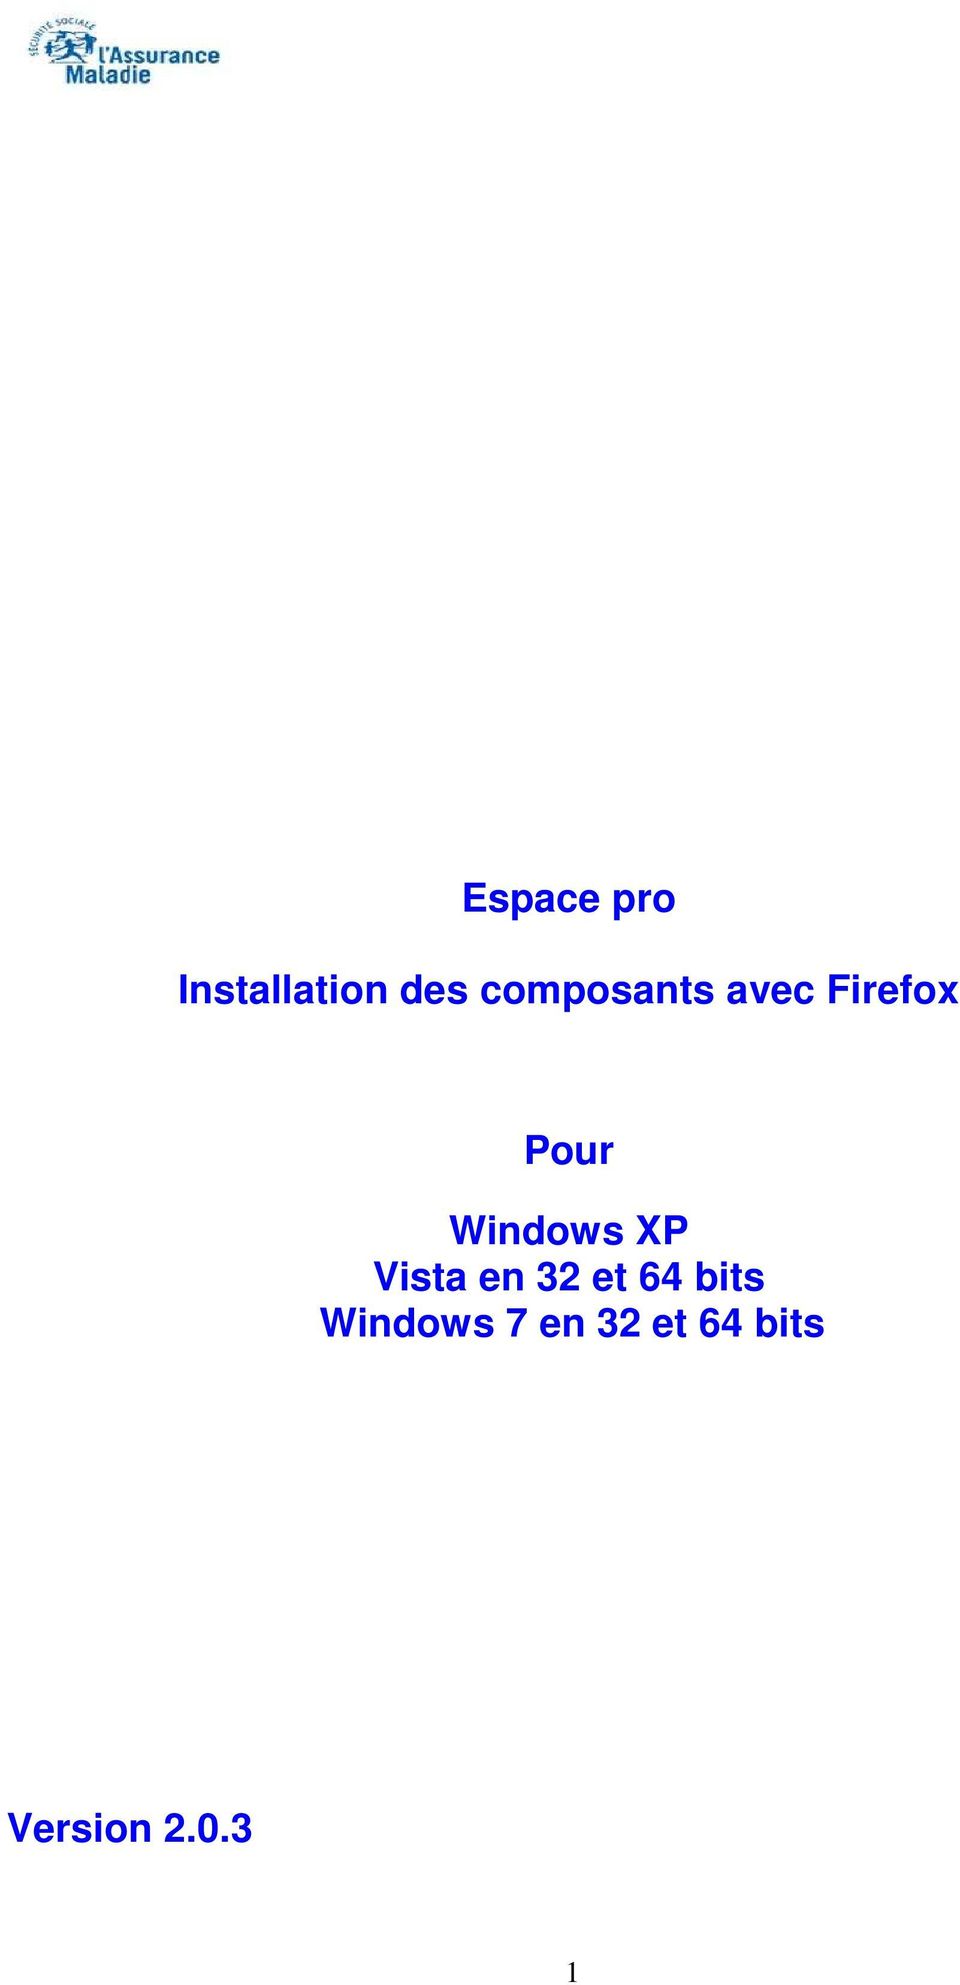 Windows XP Vista en 32 et 64 bits